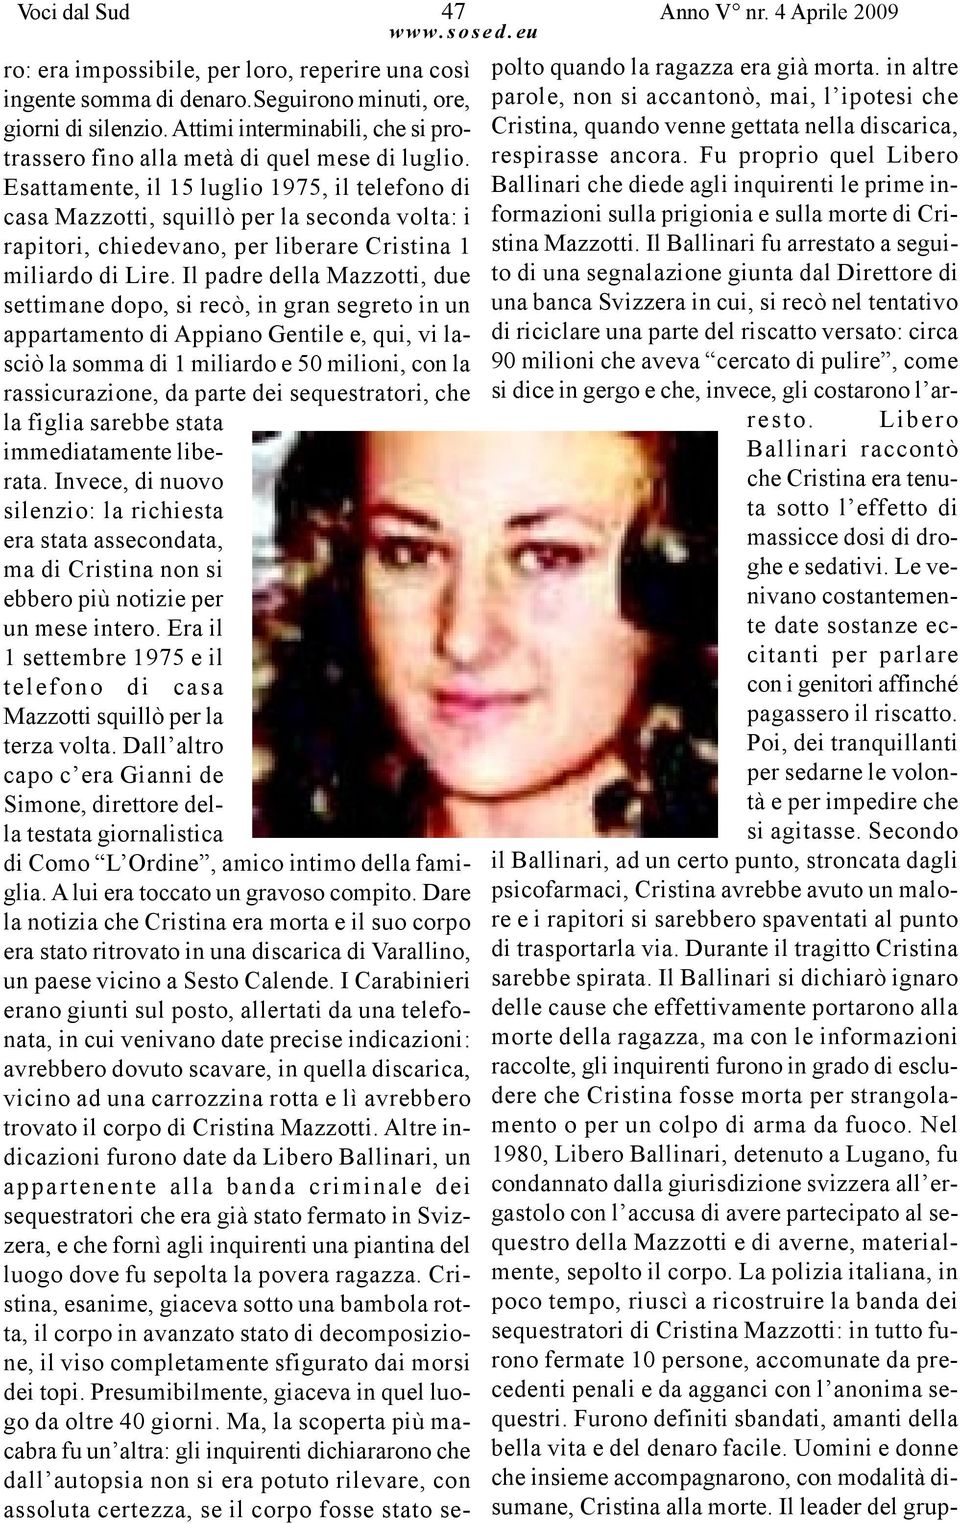 Esattamente, il 15 luglio 1975, il telefono di casa Mazzotti, squillò per la seconda volta: i rapitori, chiedevano, per liberare Cristina 1 miliardo di Lire.